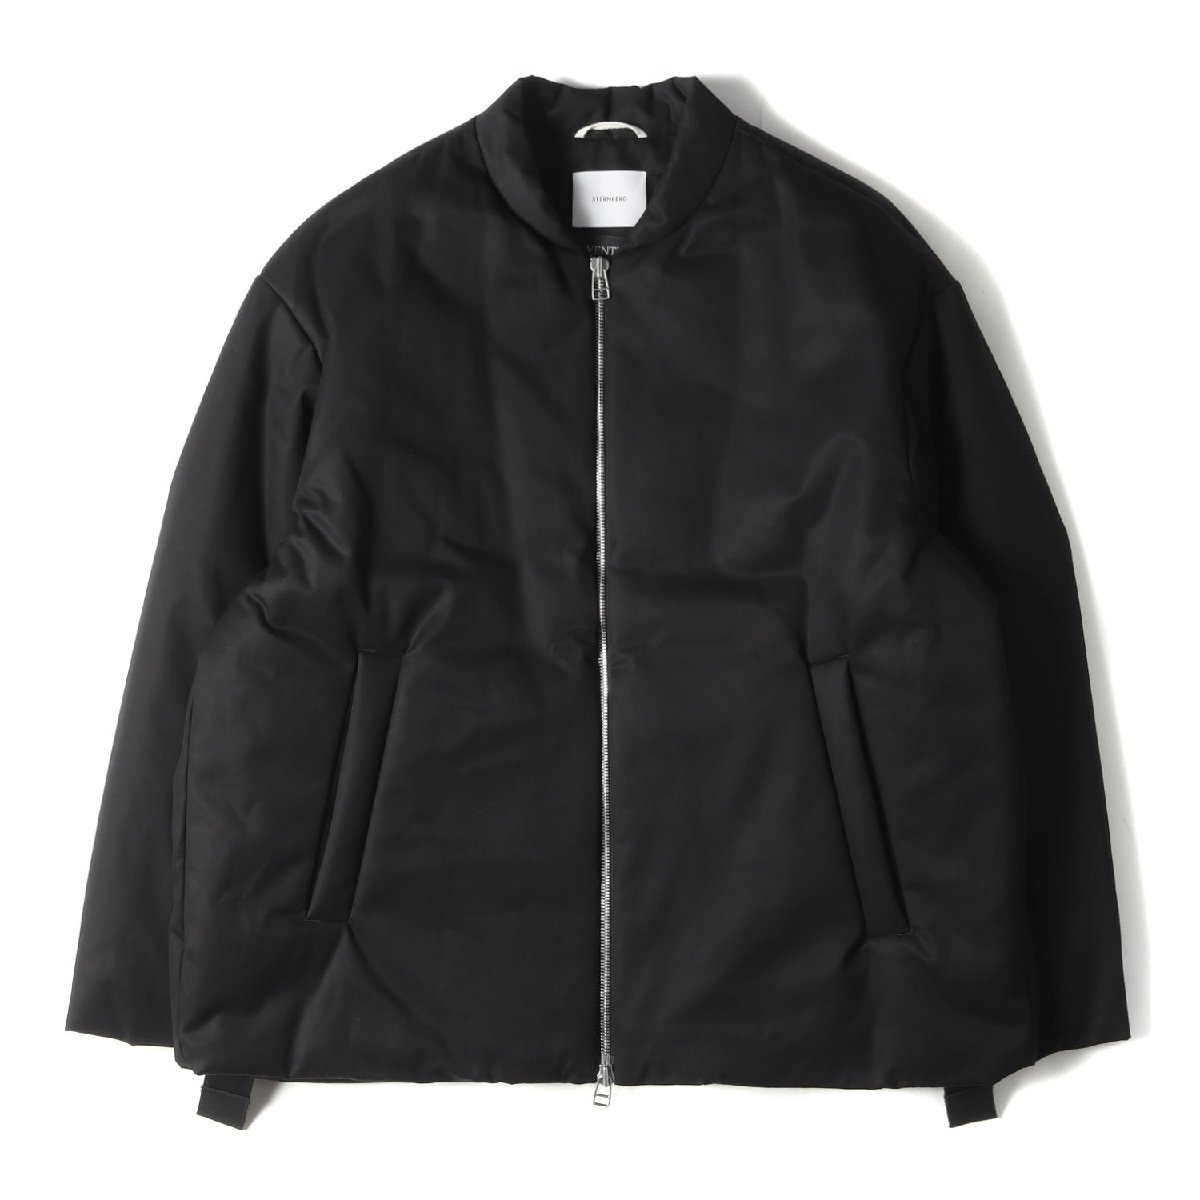 美品 STERNBERG スタンバーグ ジャケット サイズ:L 22AW VENTILE ボンバー ジャケット ベンタイル ダブルジップ パテッド 中わた ブラック